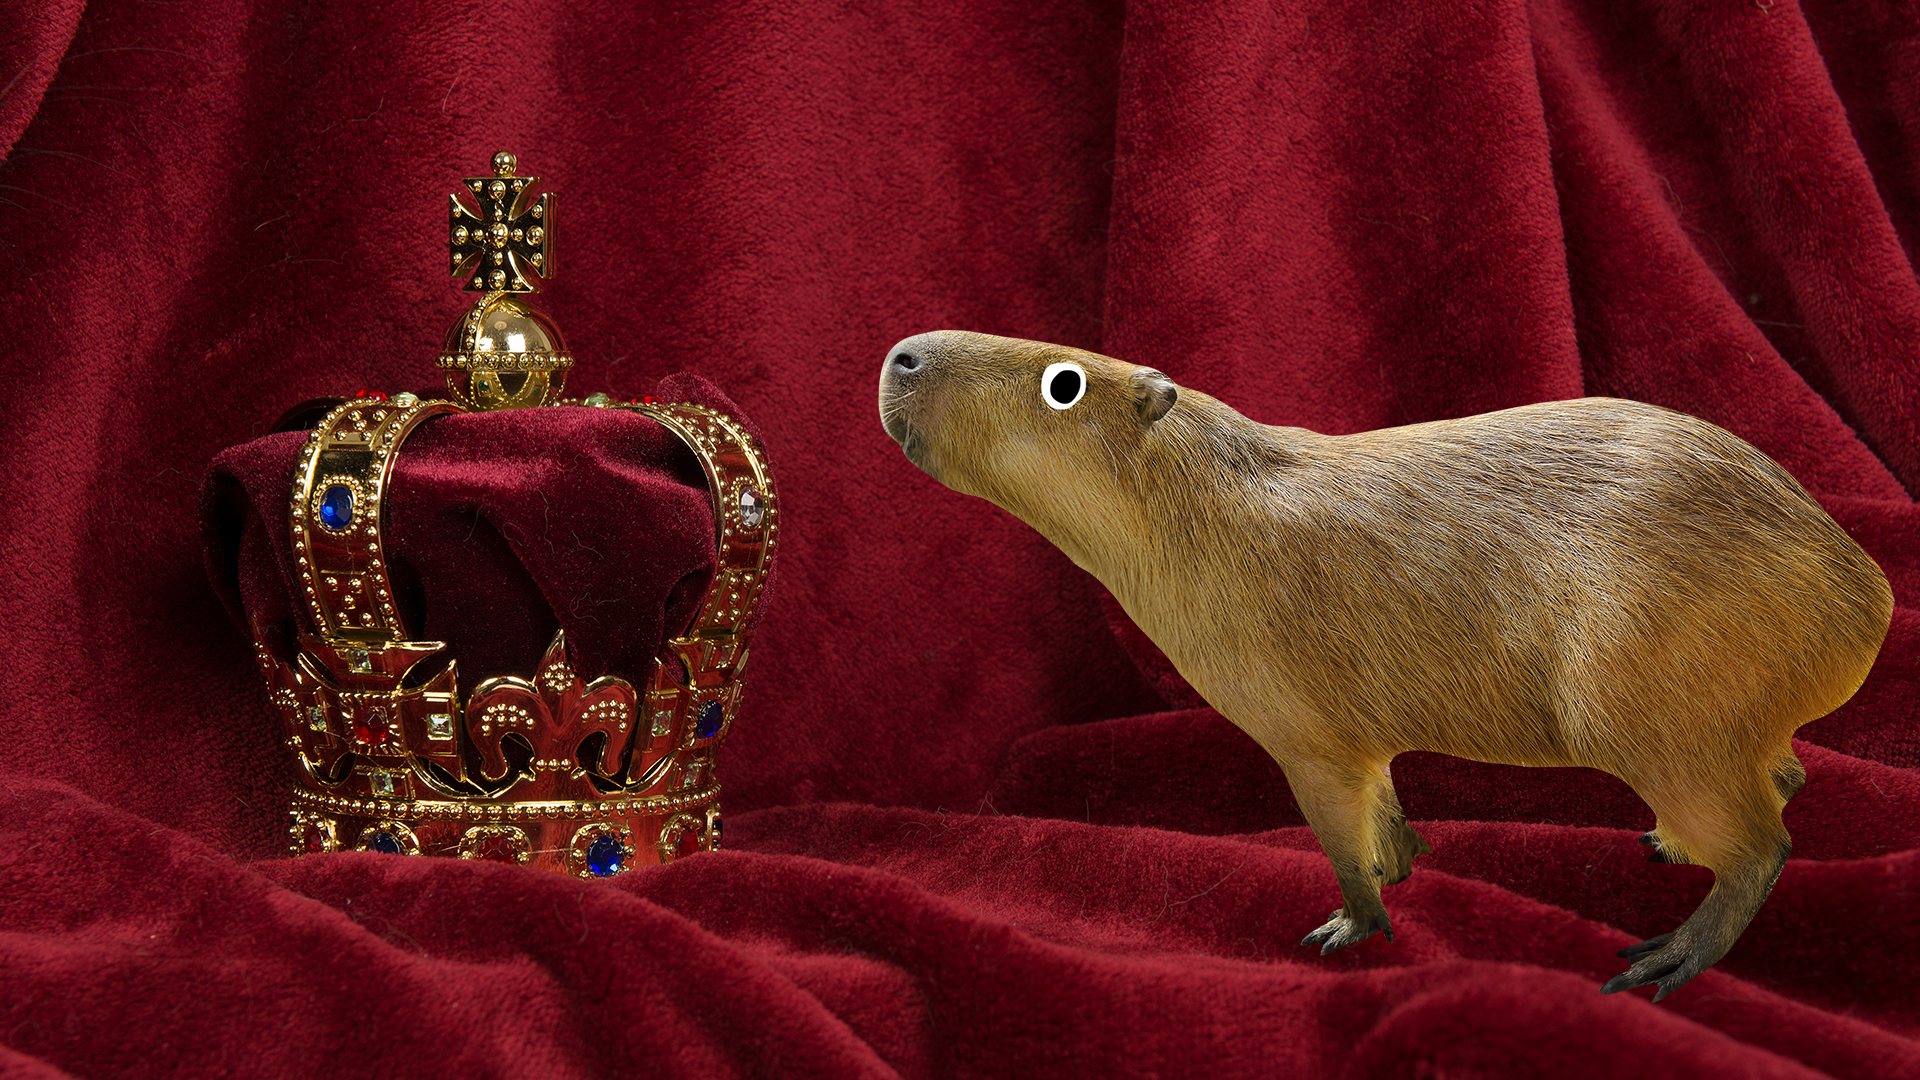 A capybara investigates a royal crown